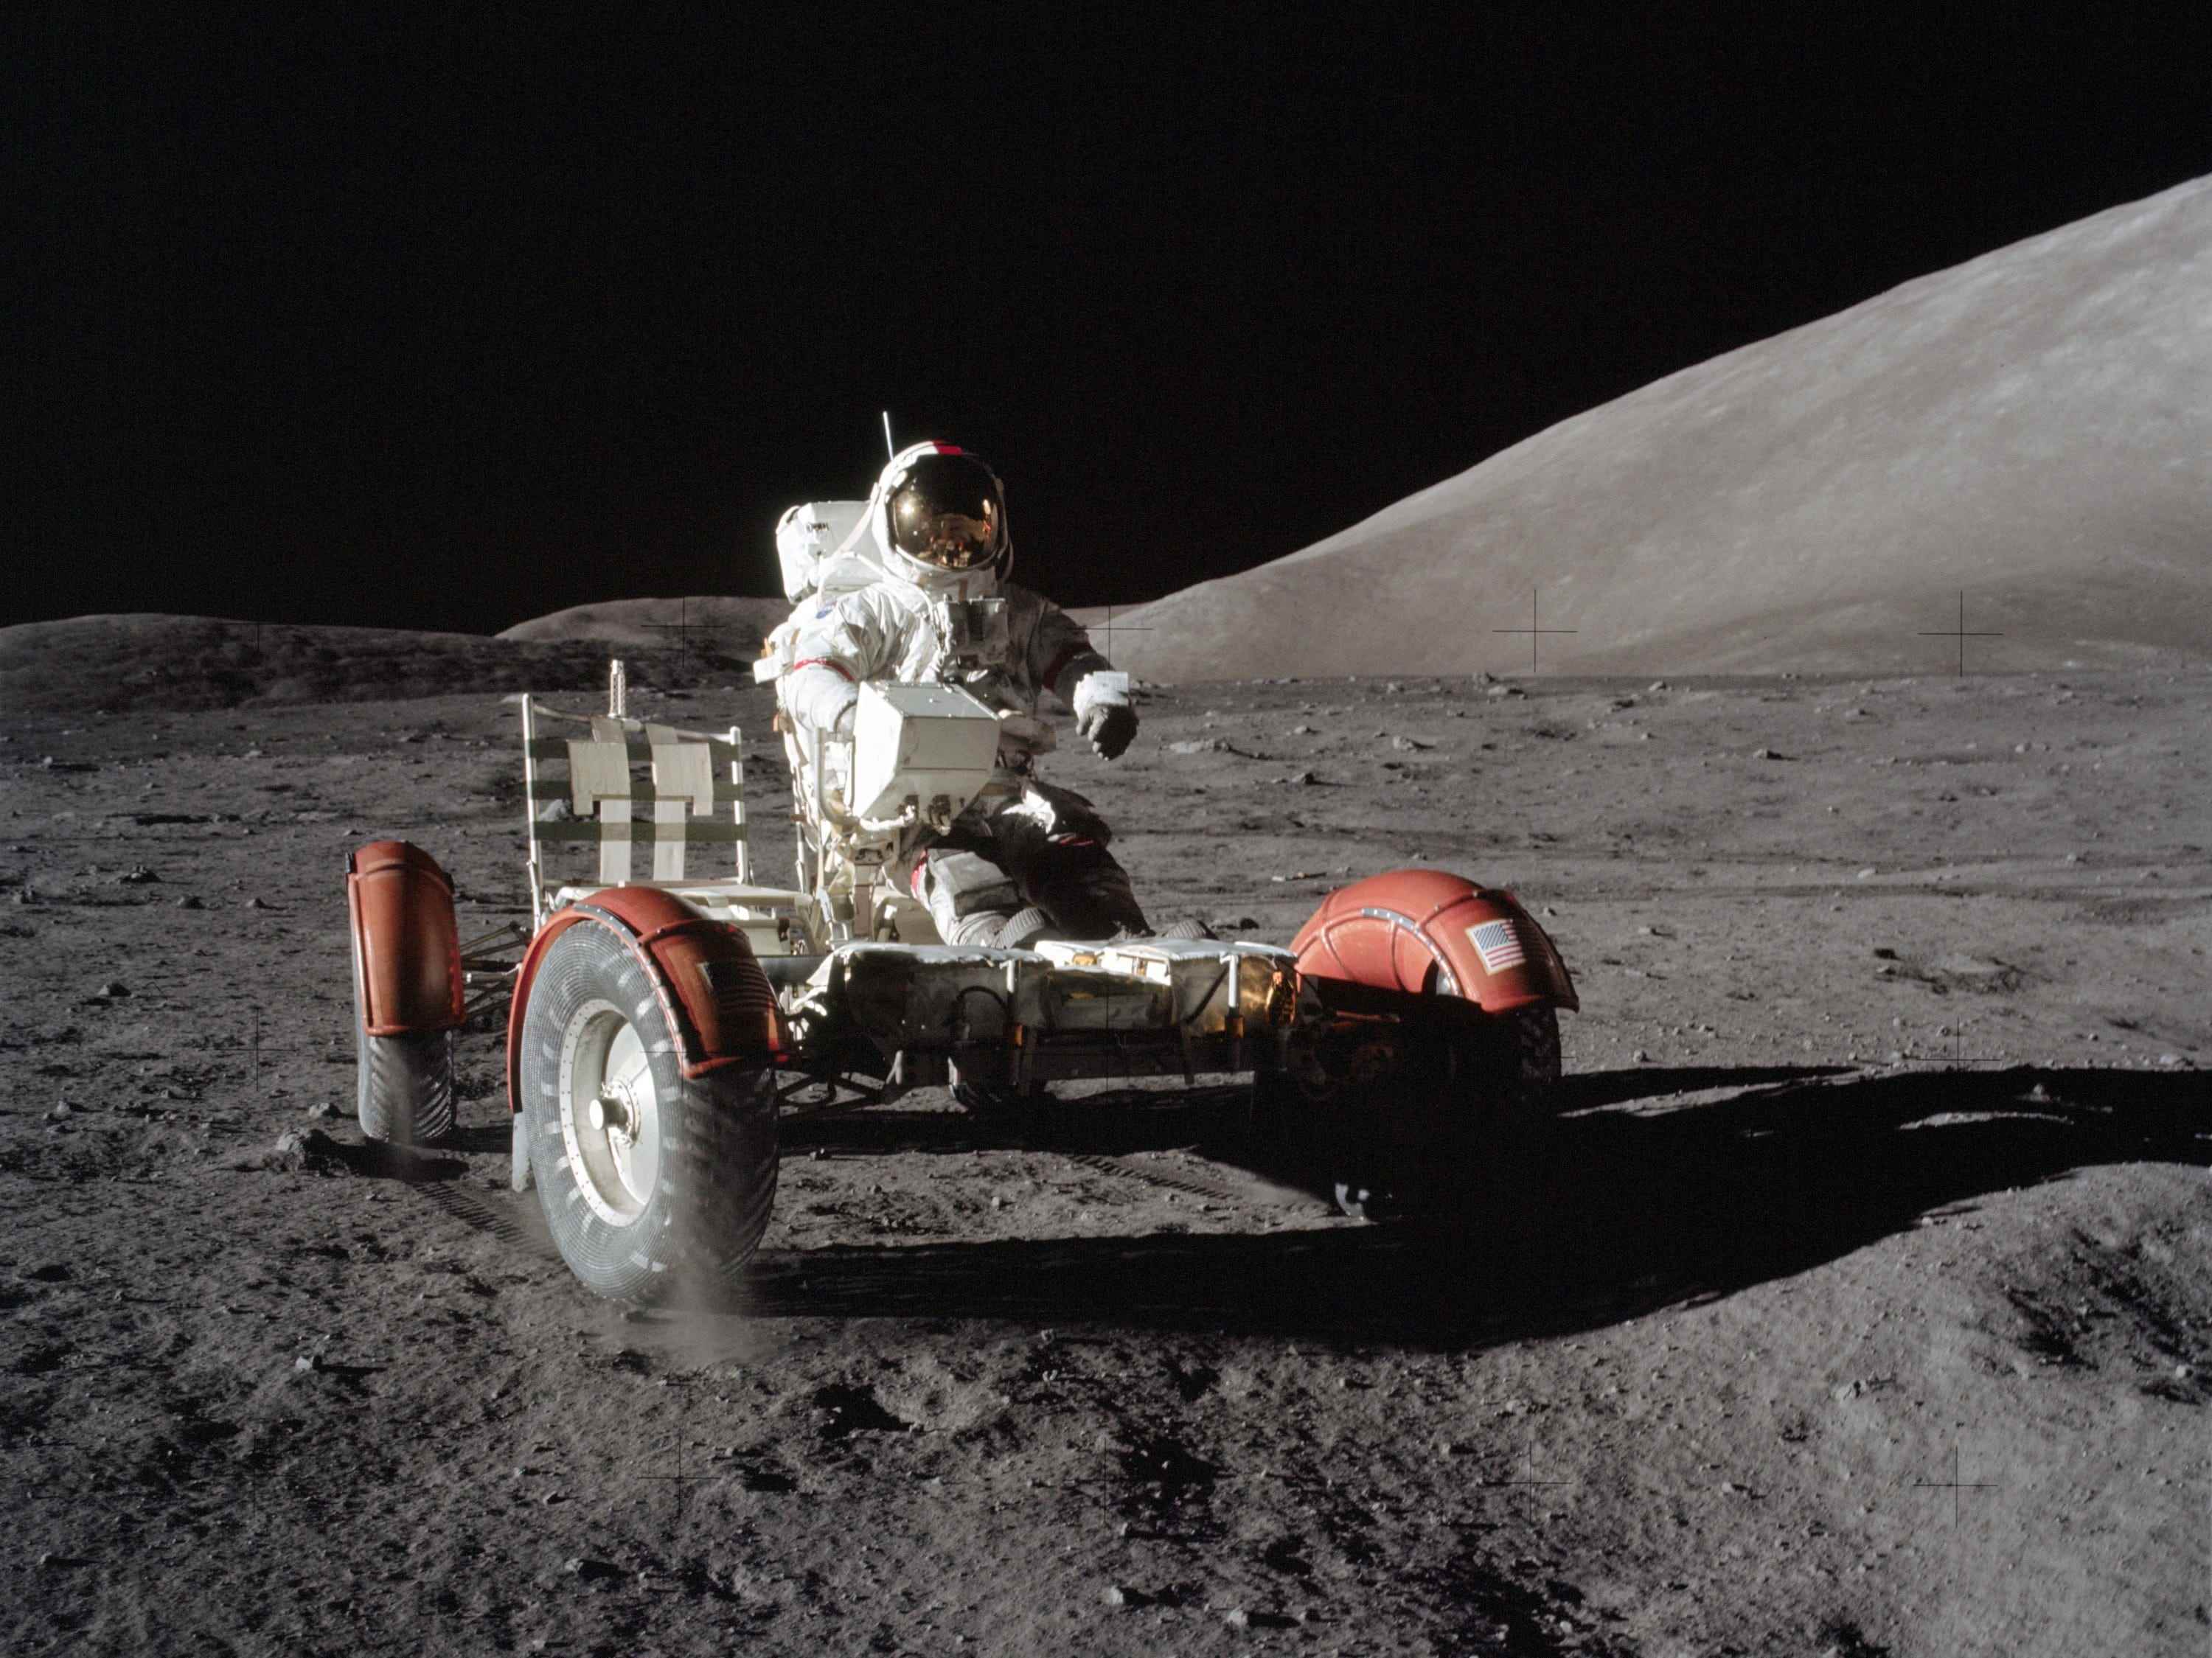 astronaut im raumanzug sitzt auf einer lunar-rover-fahrzeugplattform mit rädern auf dem mond